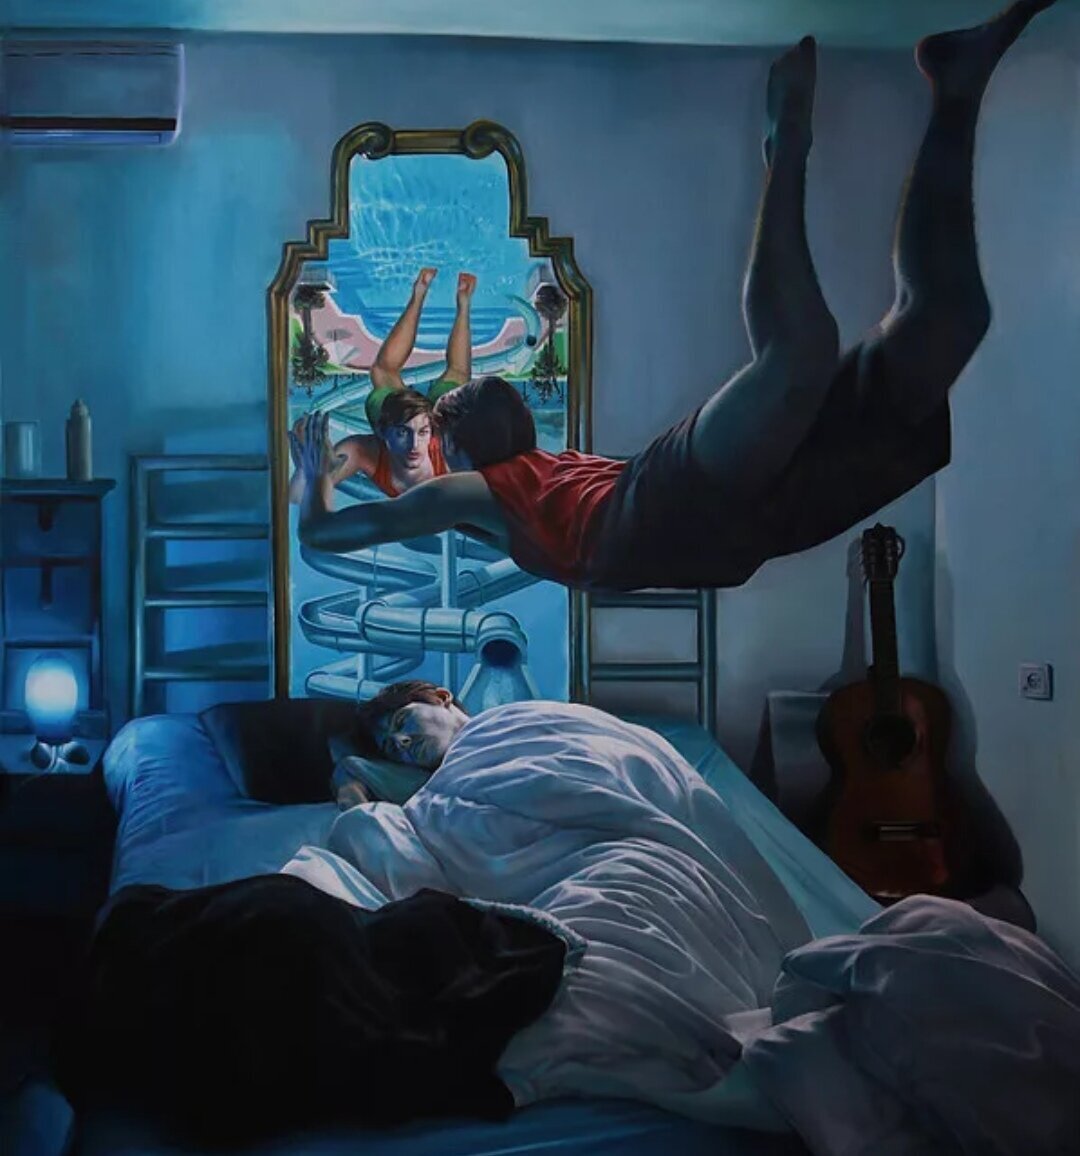 Кормить человека во сне. Нетанел Моран художник. Осознанный сон. Осознанный сон арт. Странные сны.